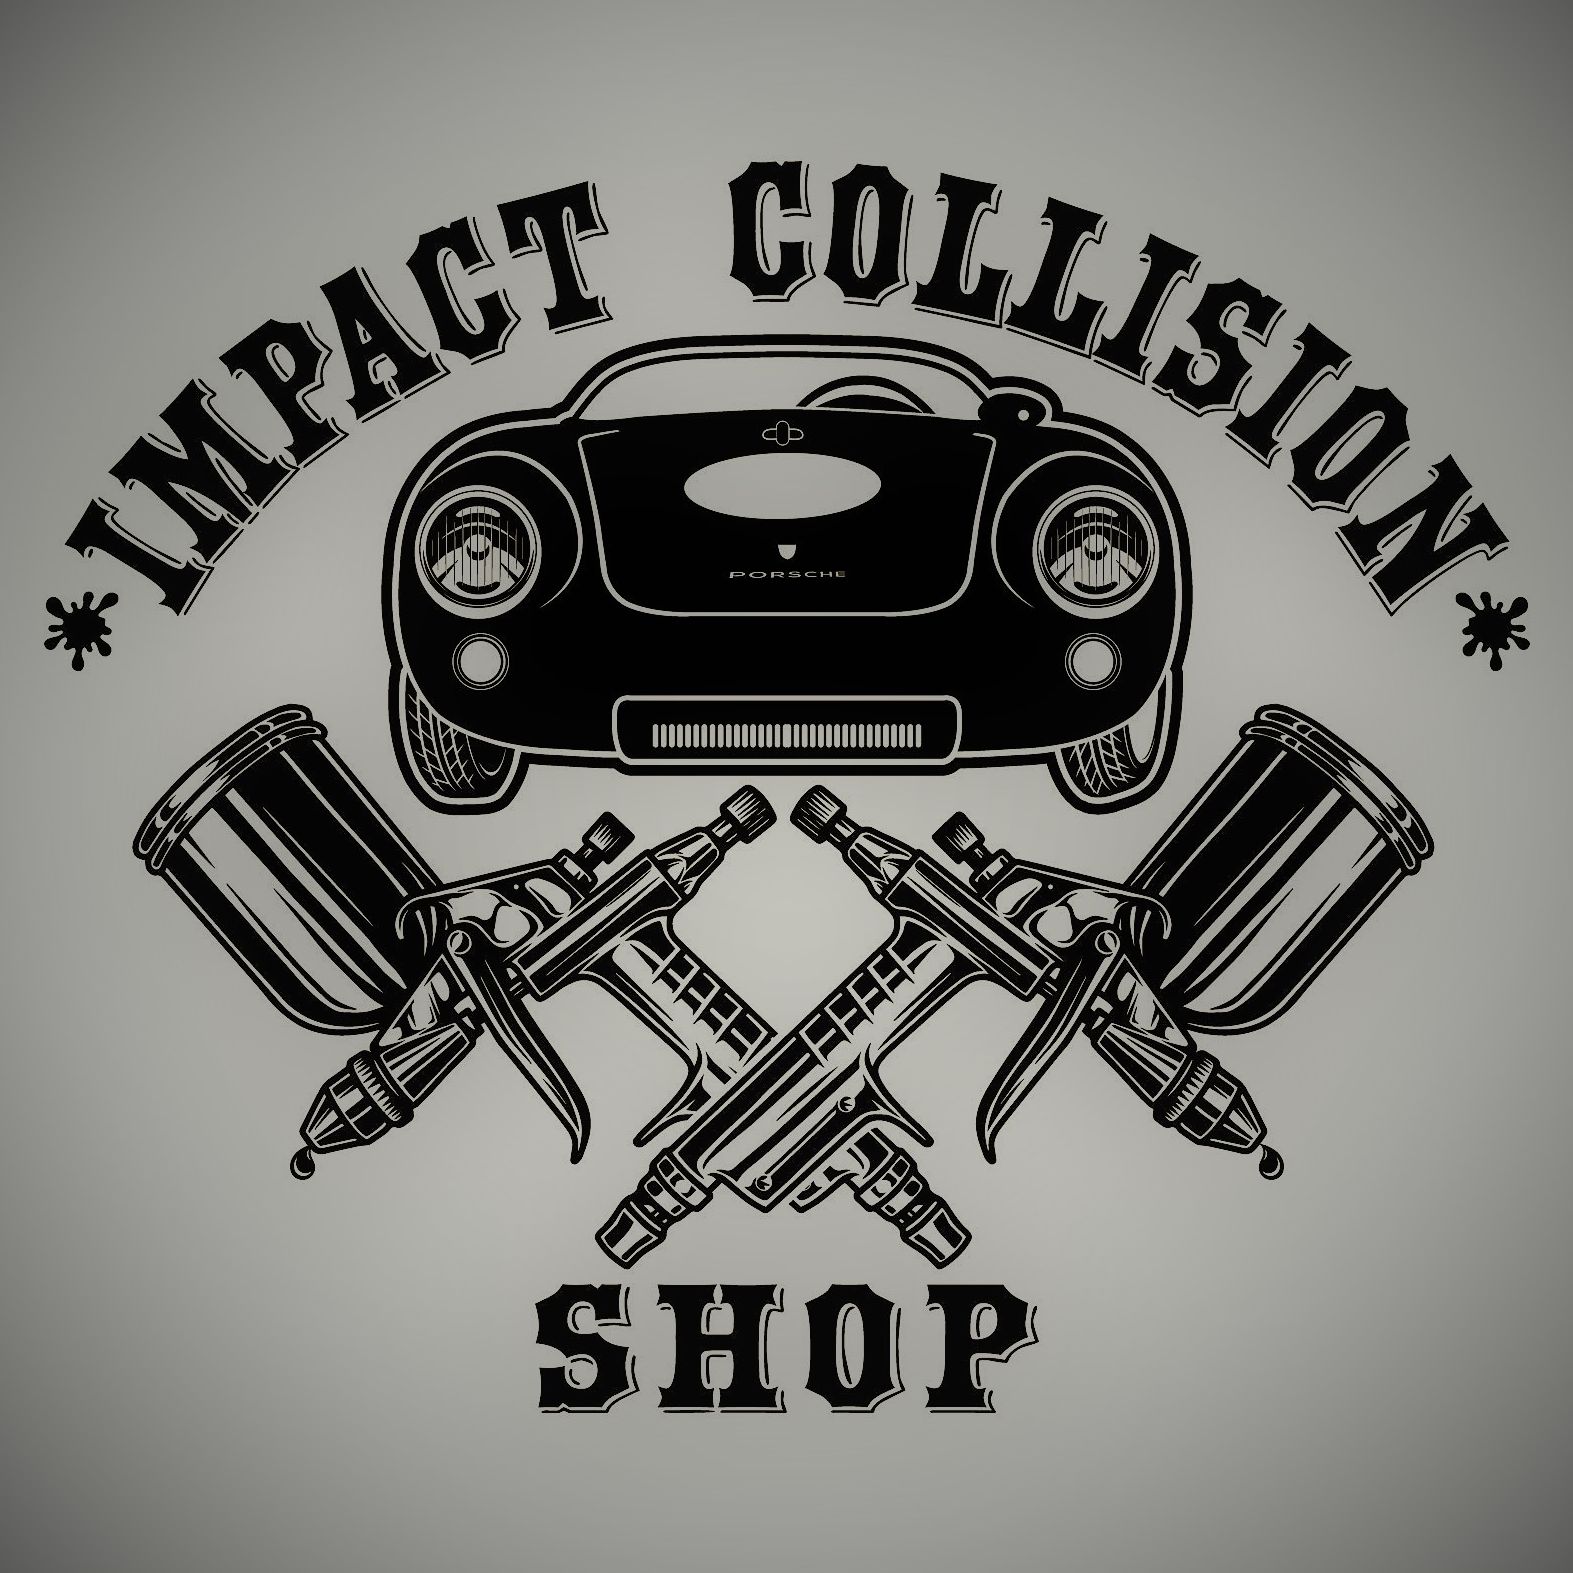 Impact Collision Shop